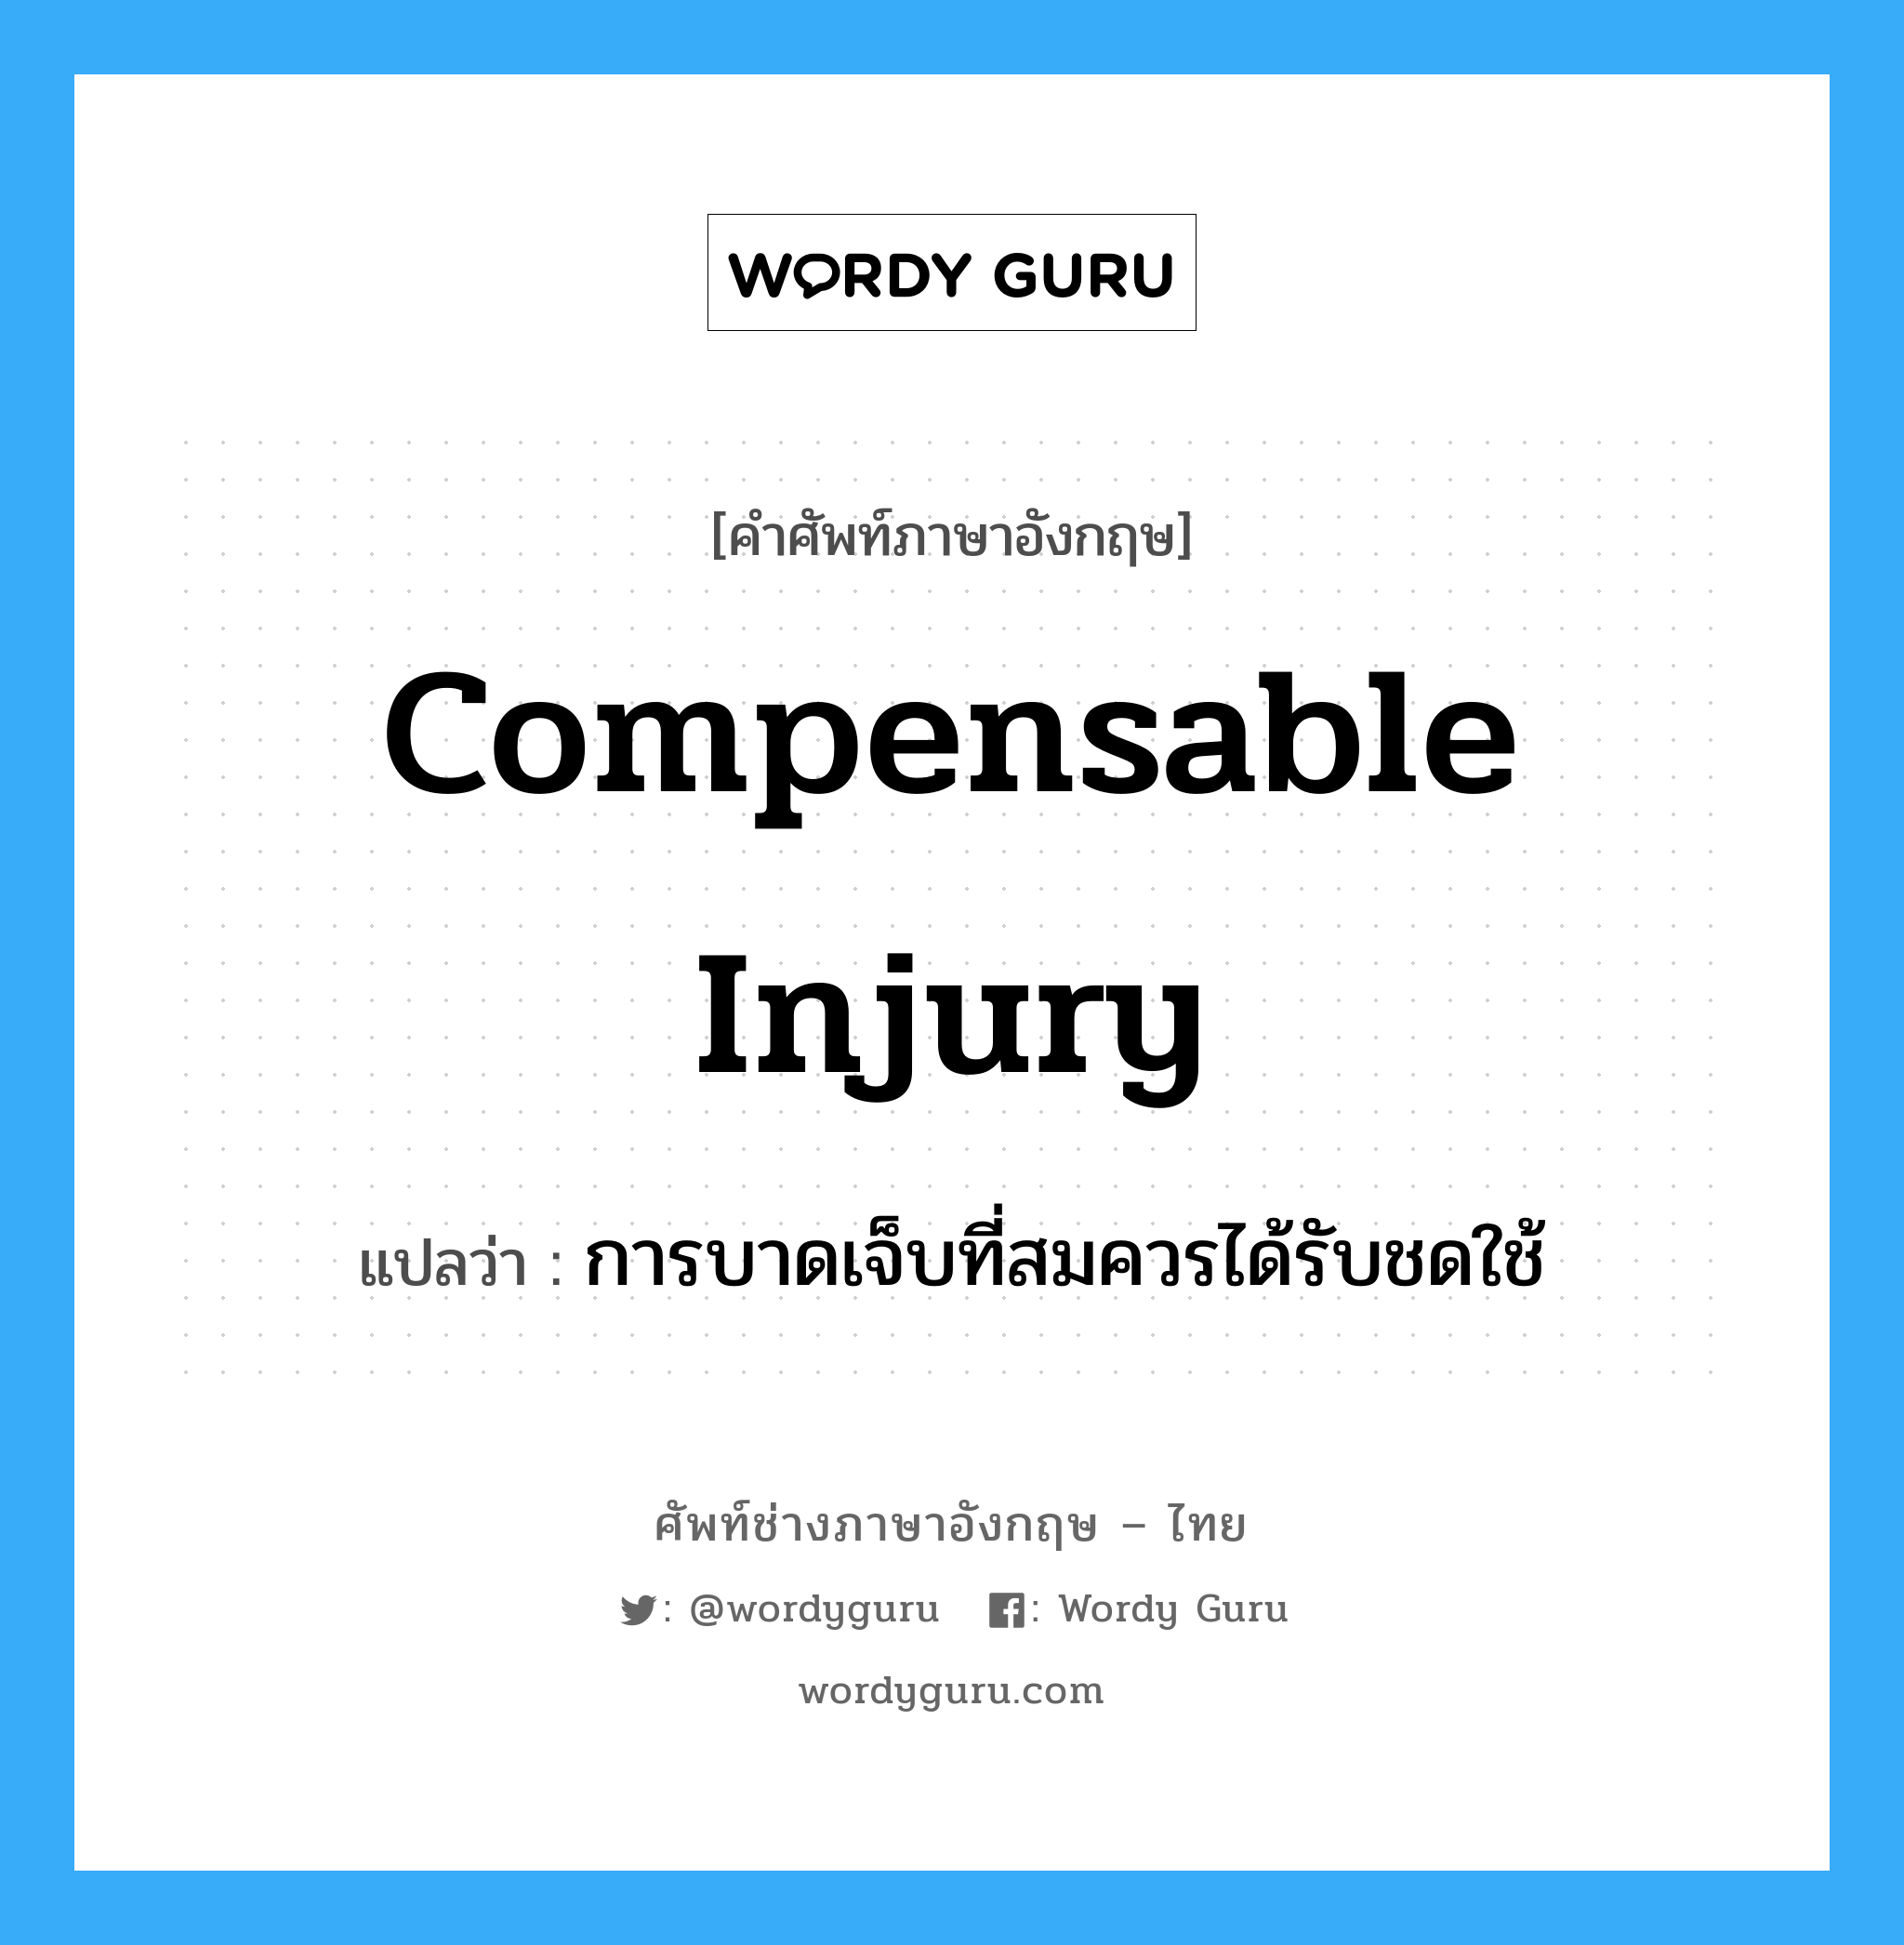 การบาดเจ็บที่สมควรได้รับชดใช้ ภาษาอังกฤษ?, คำศัพท์ช่างภาษาอังกฤษ - ไทย การบาดเจ็บที่สมควรได้รับชดใช้ คำศัพท์ภาษาอังกฤษ การบาดเจ็บที่สมควรได้รับชดใช้ แปลว่า Compensable Injury